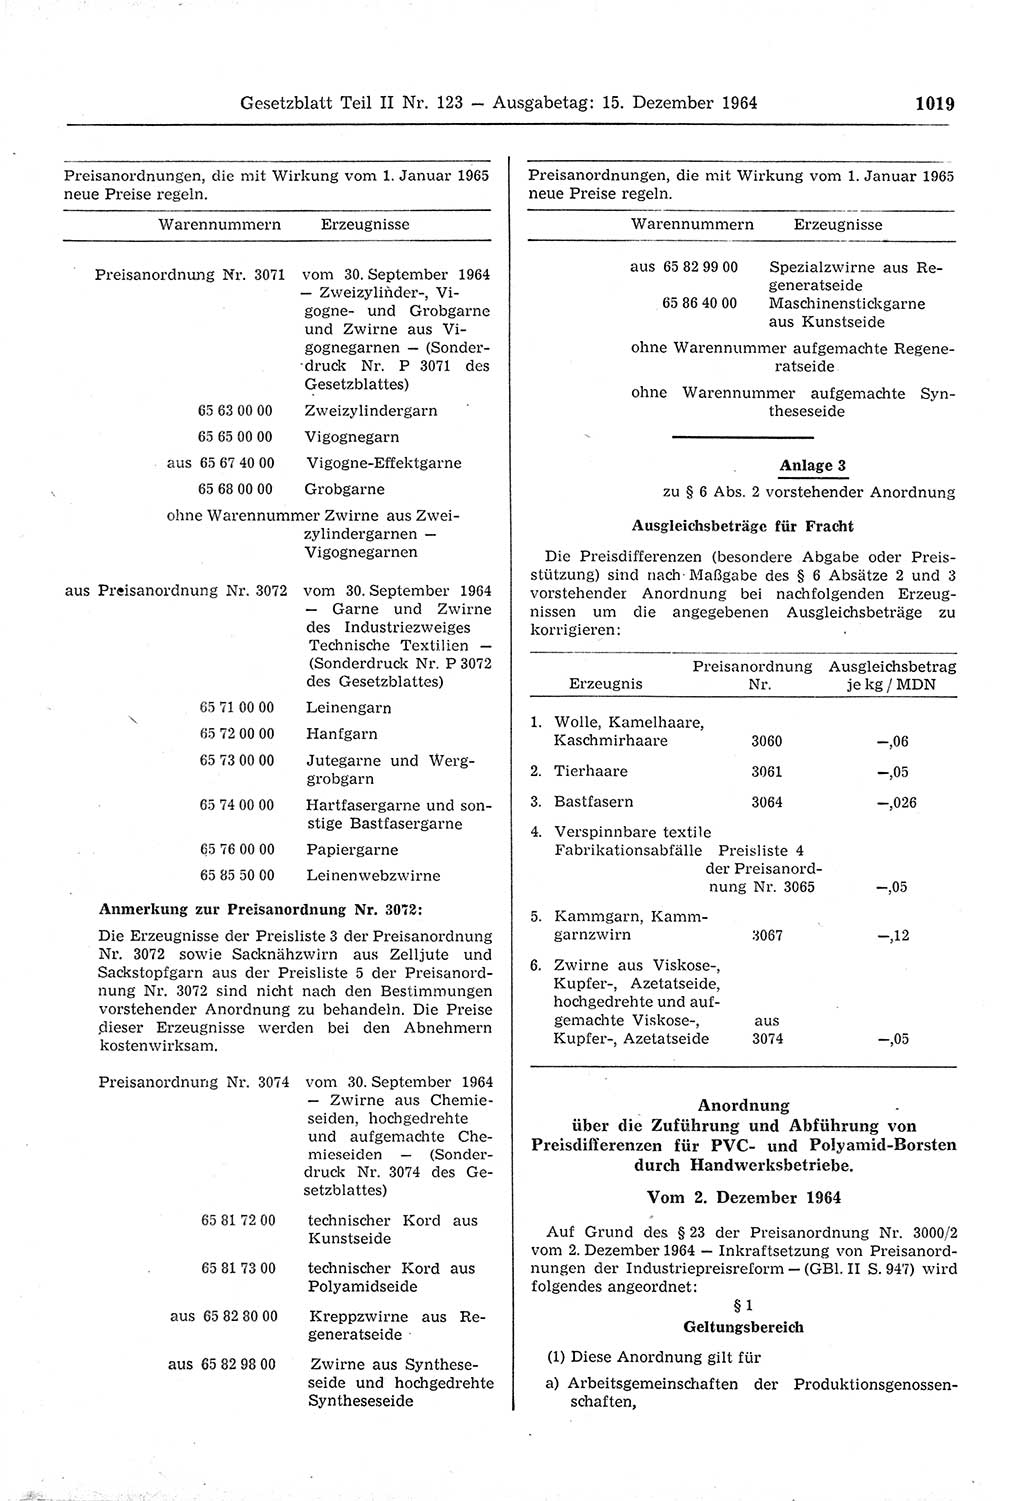 Gesetzblatt (GBl.) der Deutschen Demokratischen Republik (DDR) Teil ⅠⅠ 1964, Seite 1019 (GBl. DDR ⅠⅠ 1964, S. 1019)